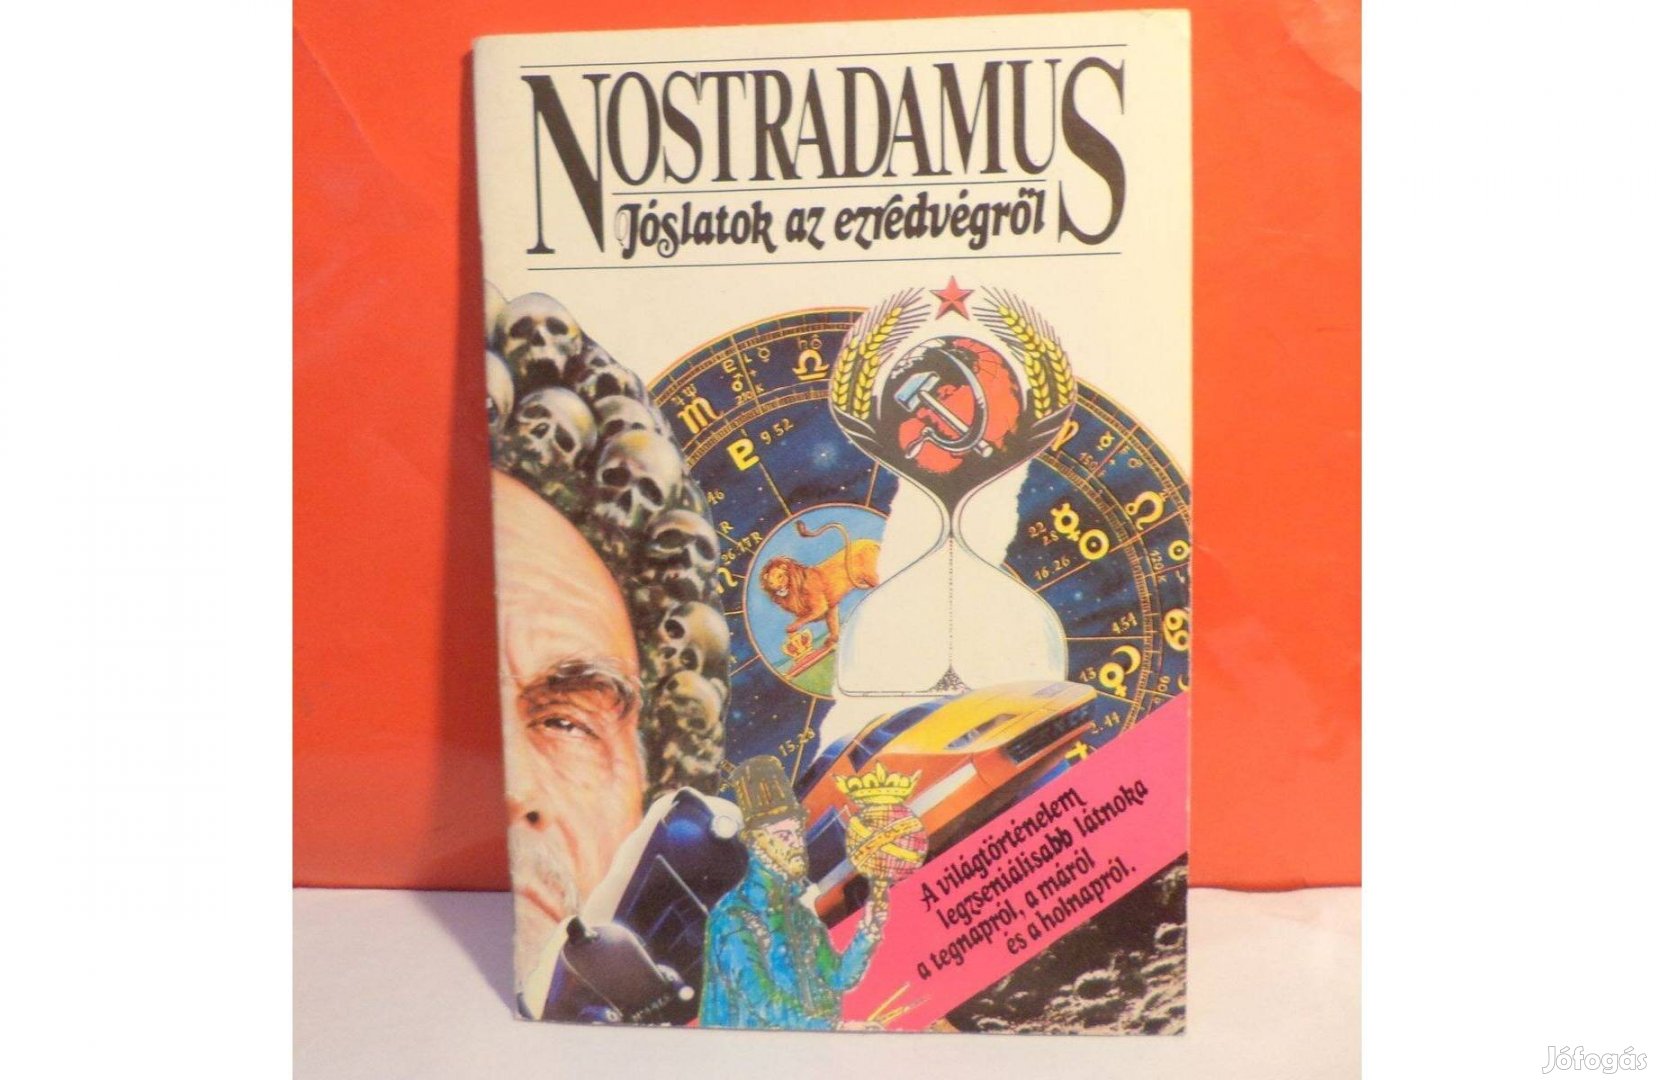 Nostradamus: Jóslatok az ezredvégről